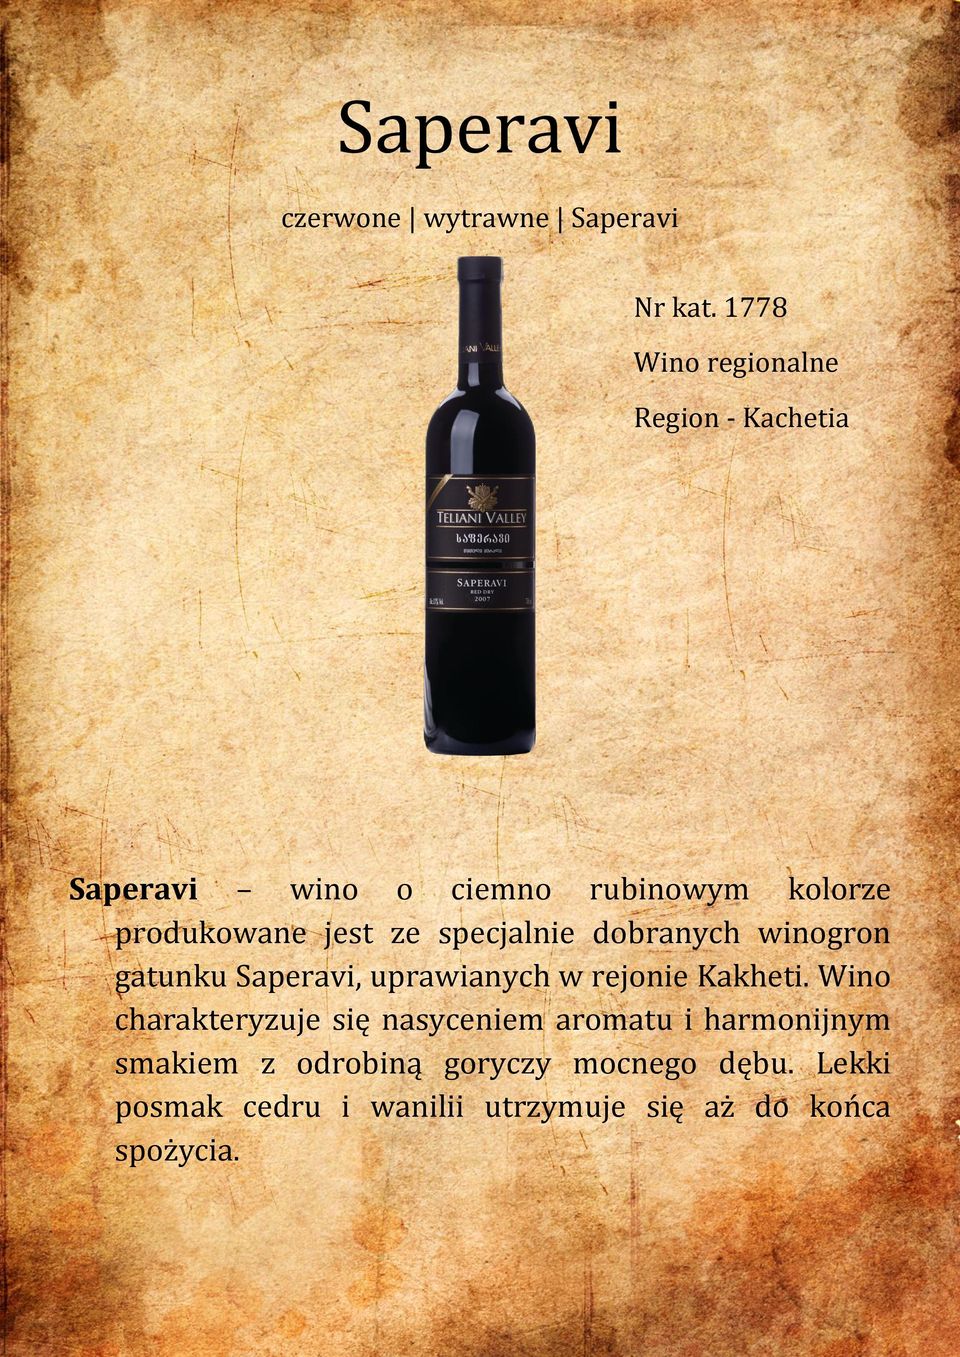 ze specjalnie dobranych winogron gatunku Saperavi, uprawianych w rejonie Kakheti.